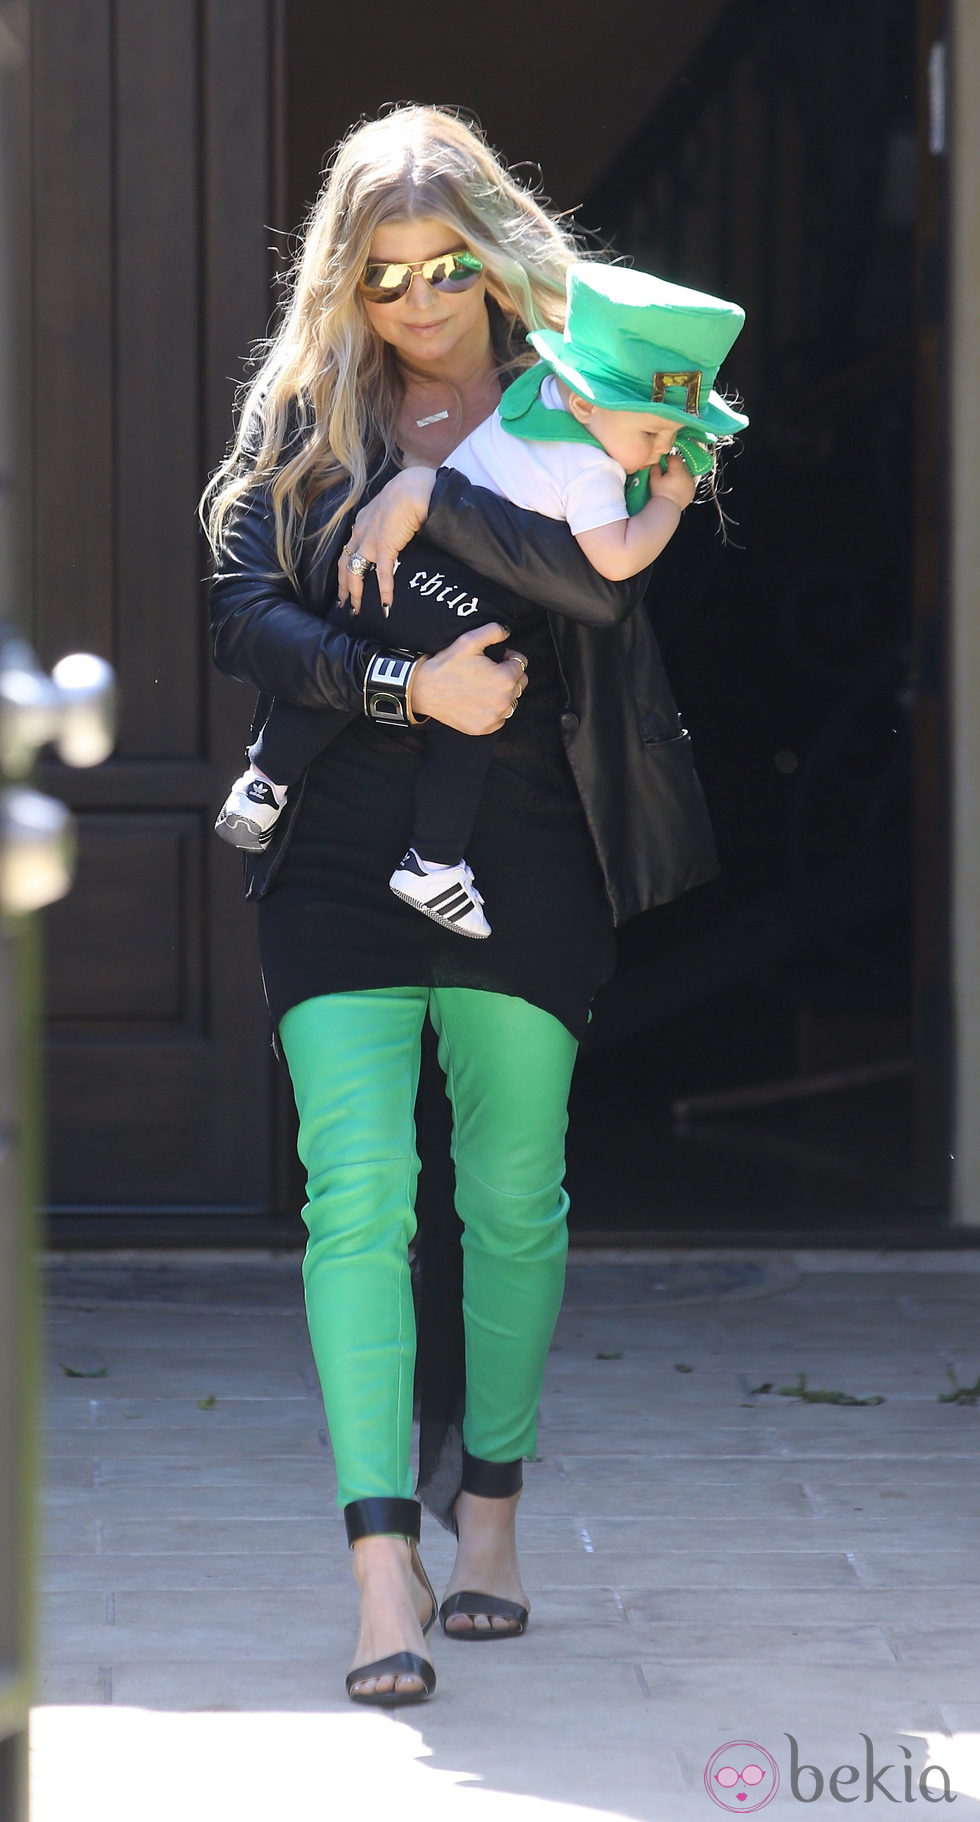 Fergie celebrando San Patricio 2014 con su hijo Axl